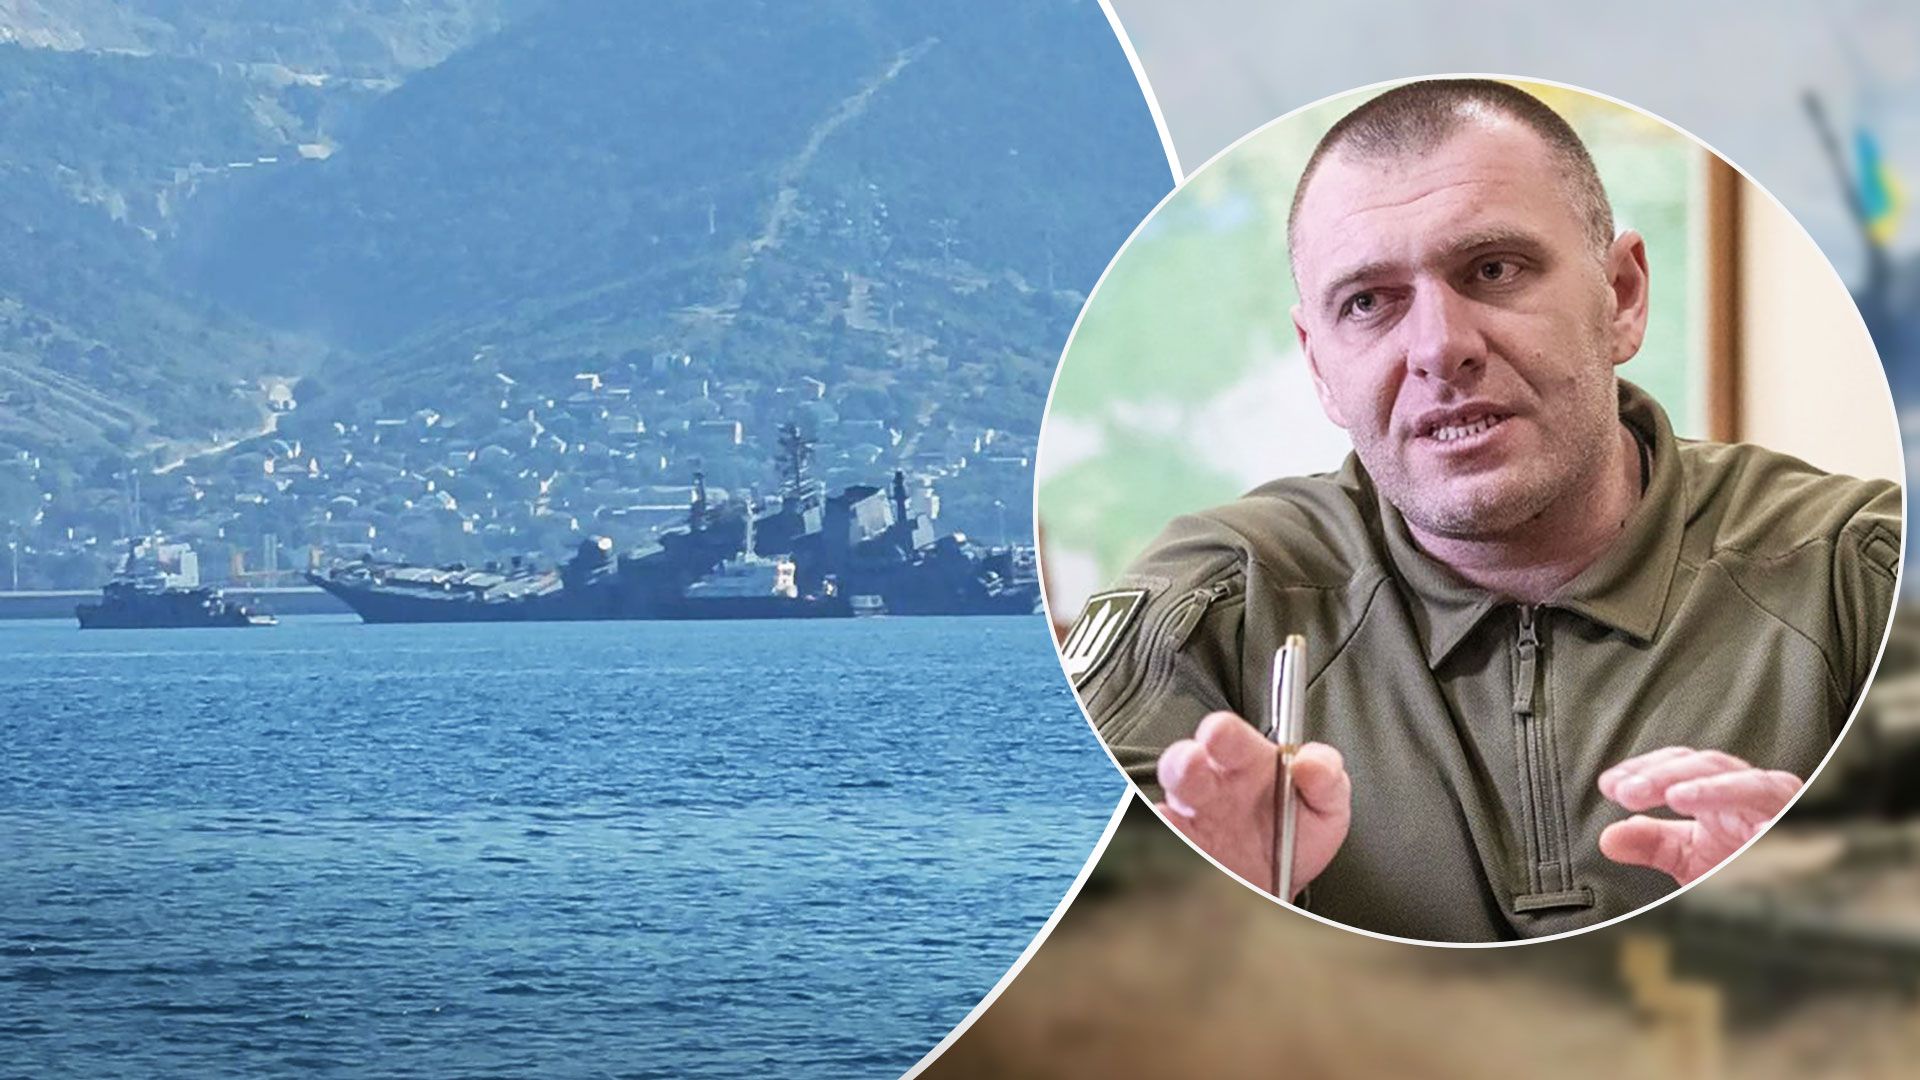 Малюк прокомментировал атаки дронов на корабли России - Новости Украины - 24 Канал